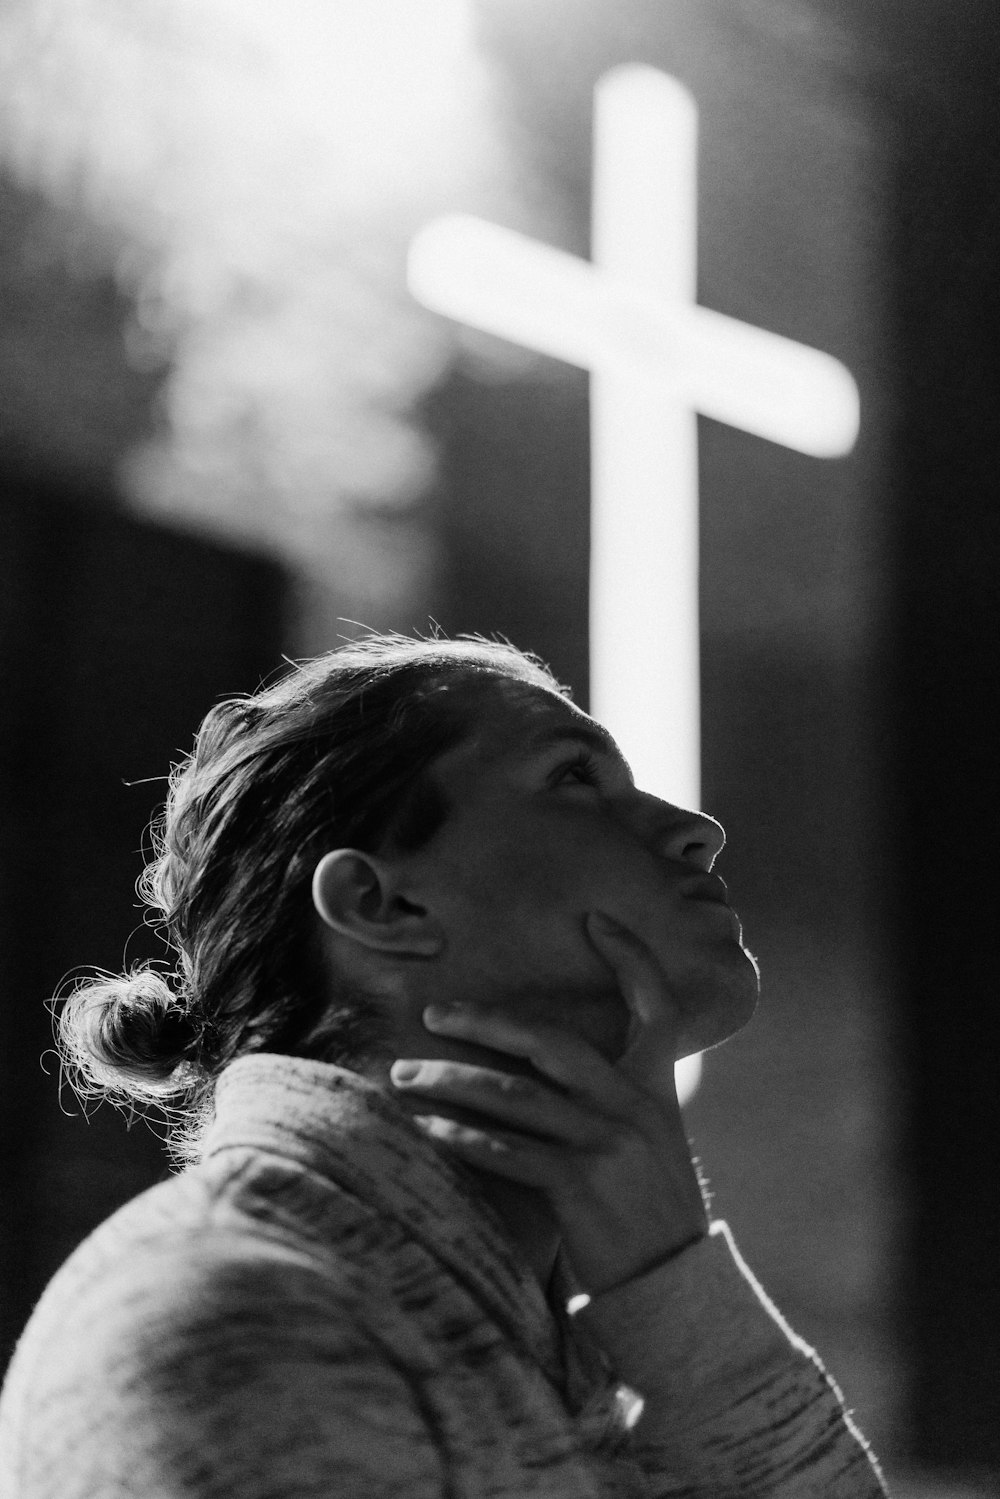 fotografia in scala di grigi di donna in piedi vicino alla segnaletica della croce bianca